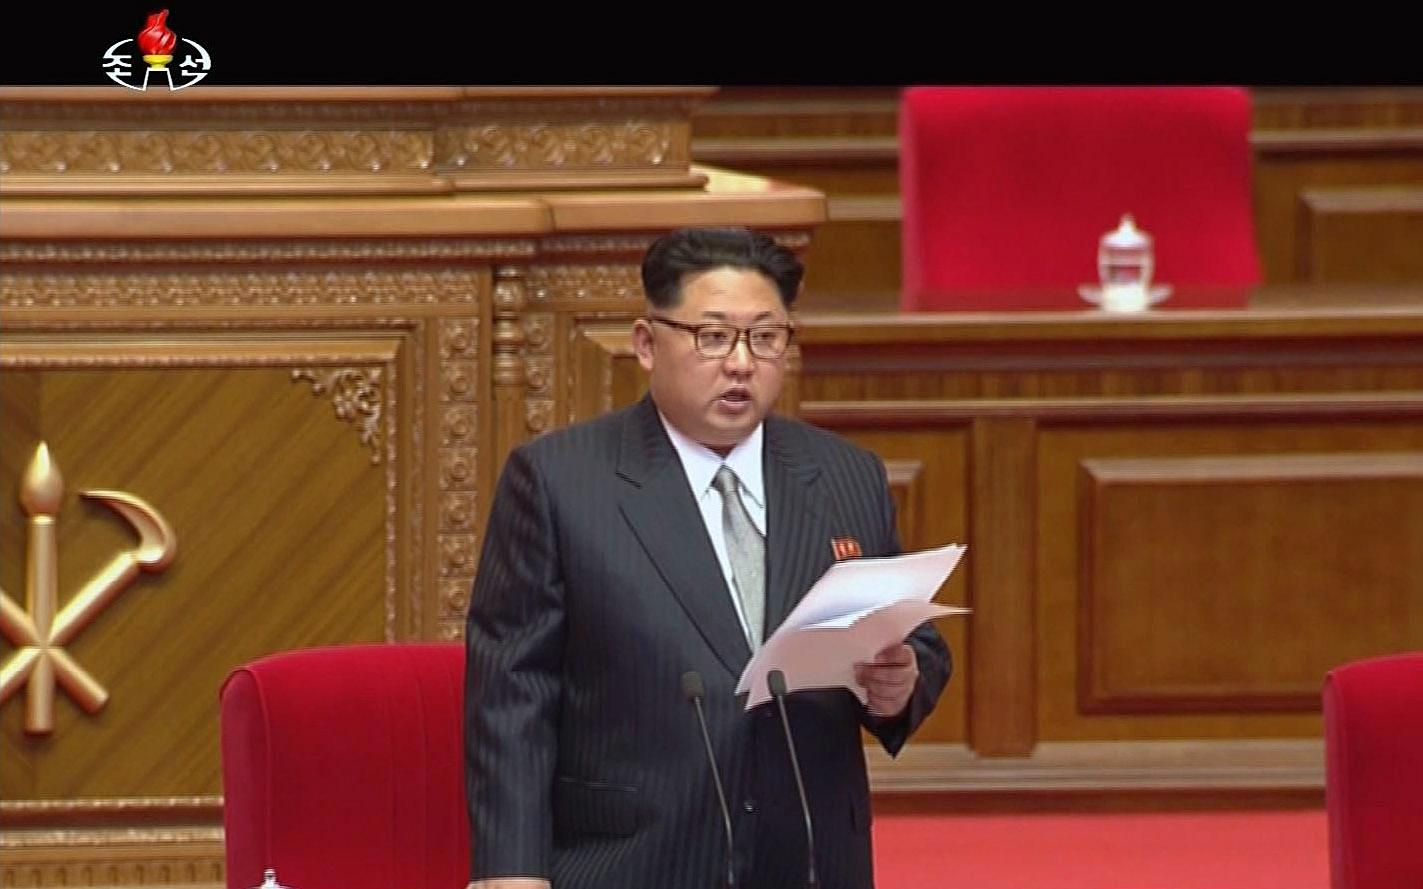 Kim Jong Un öppningstalar för kongressen.